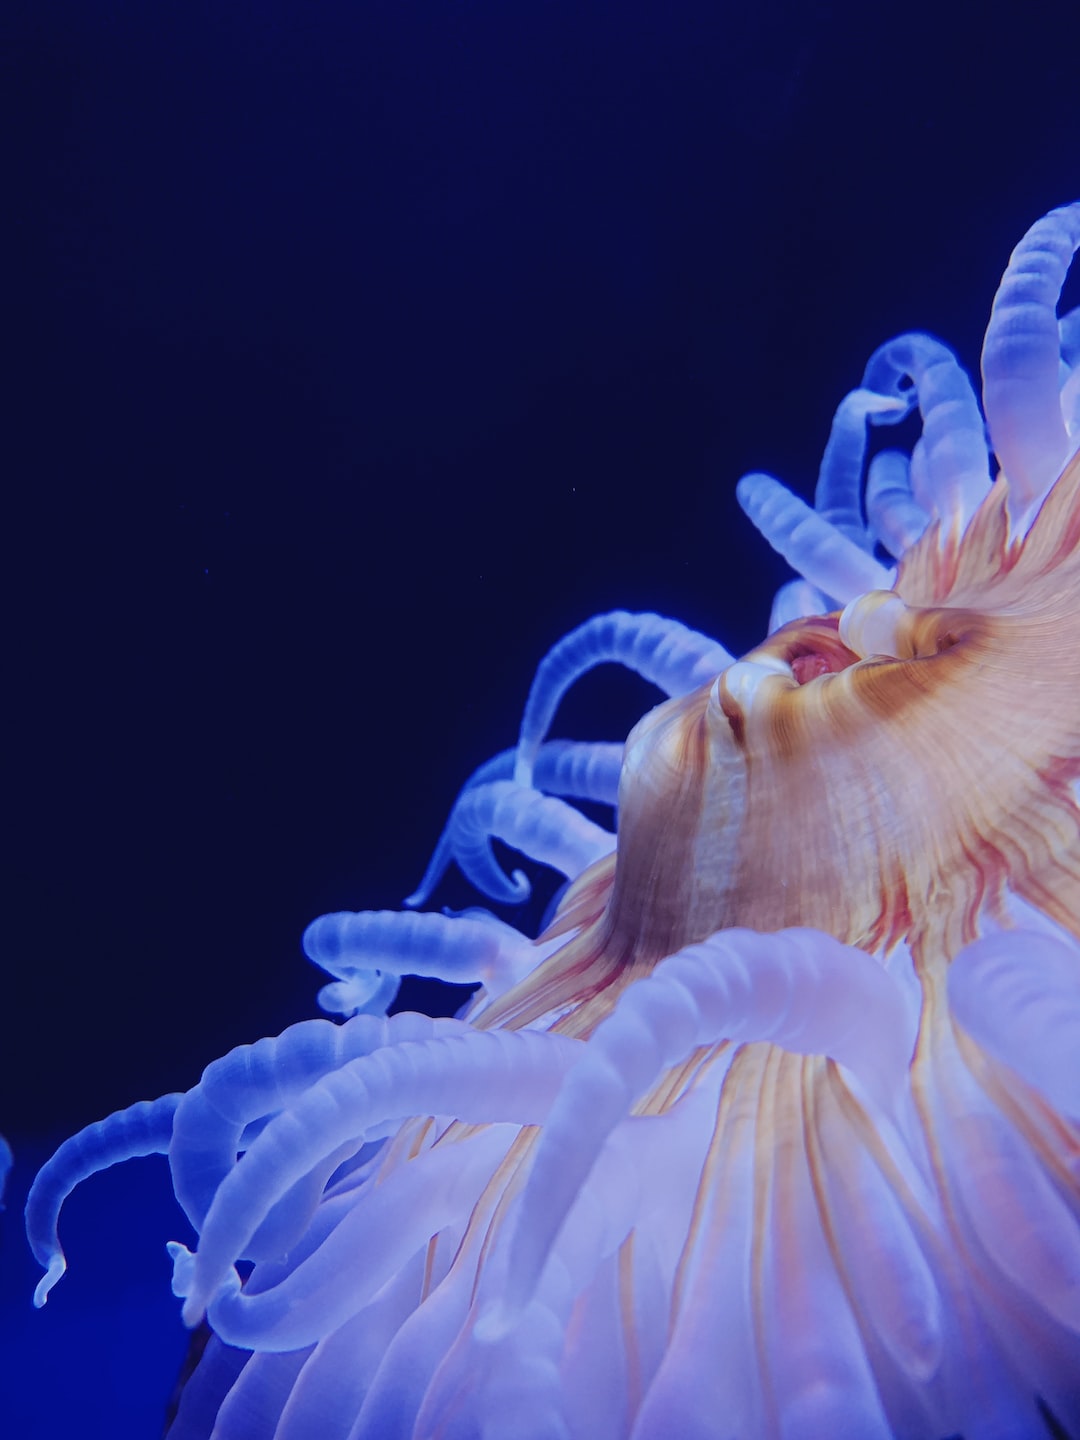 25 wichtige Fragen zu Rgb Aquarium Beleuchtung